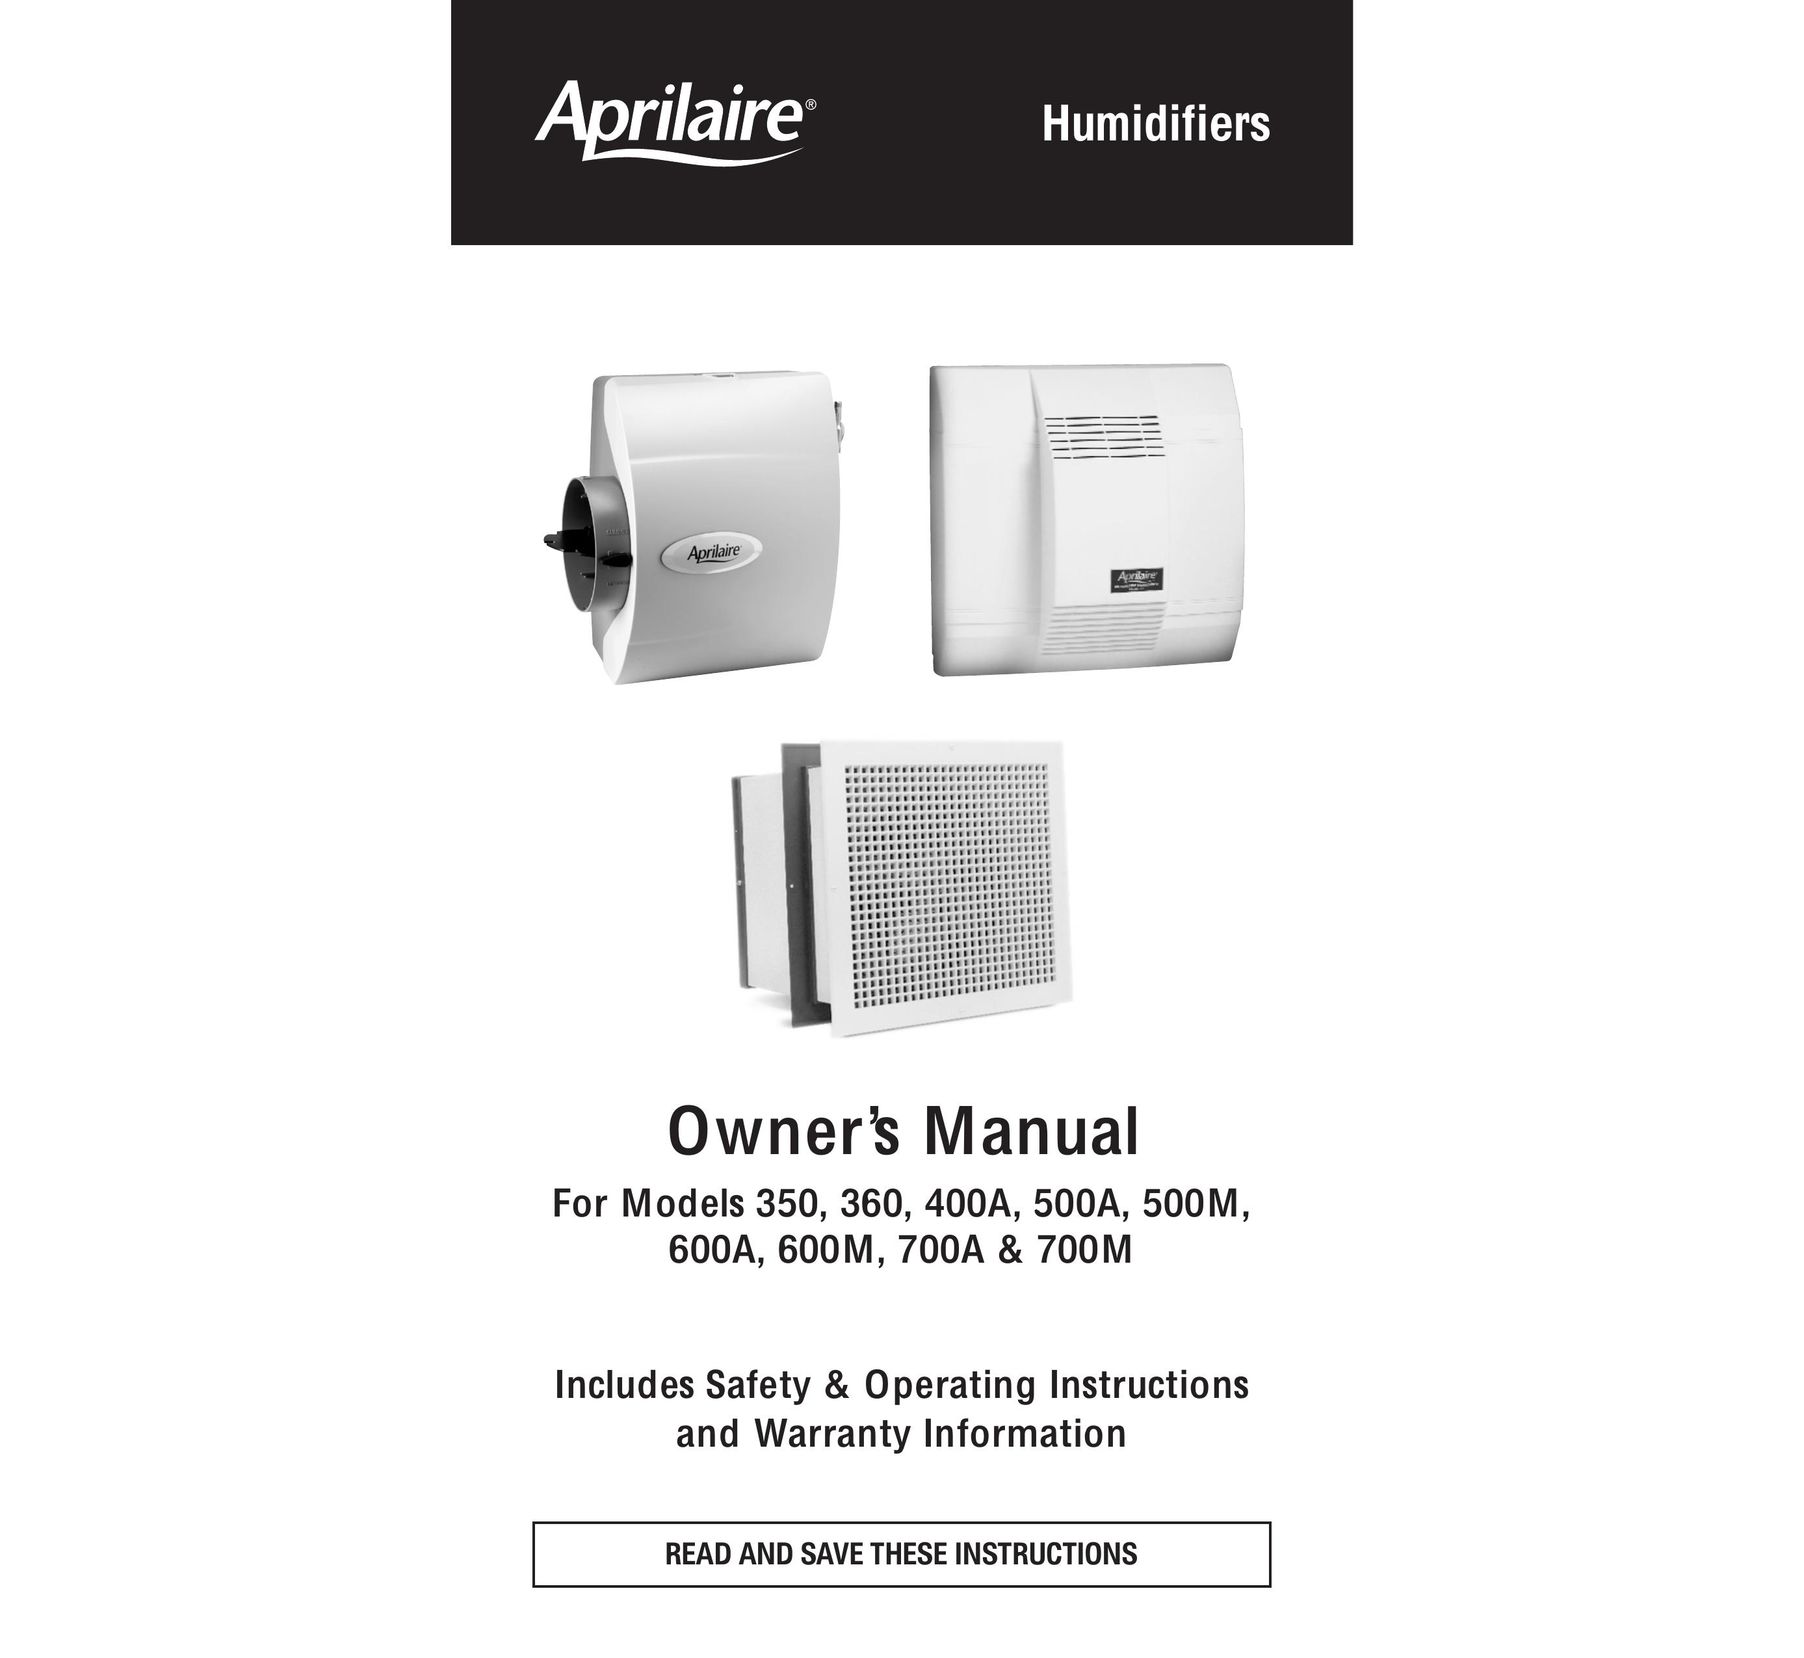 Aprilaire 600A Dehumidifier User Manual